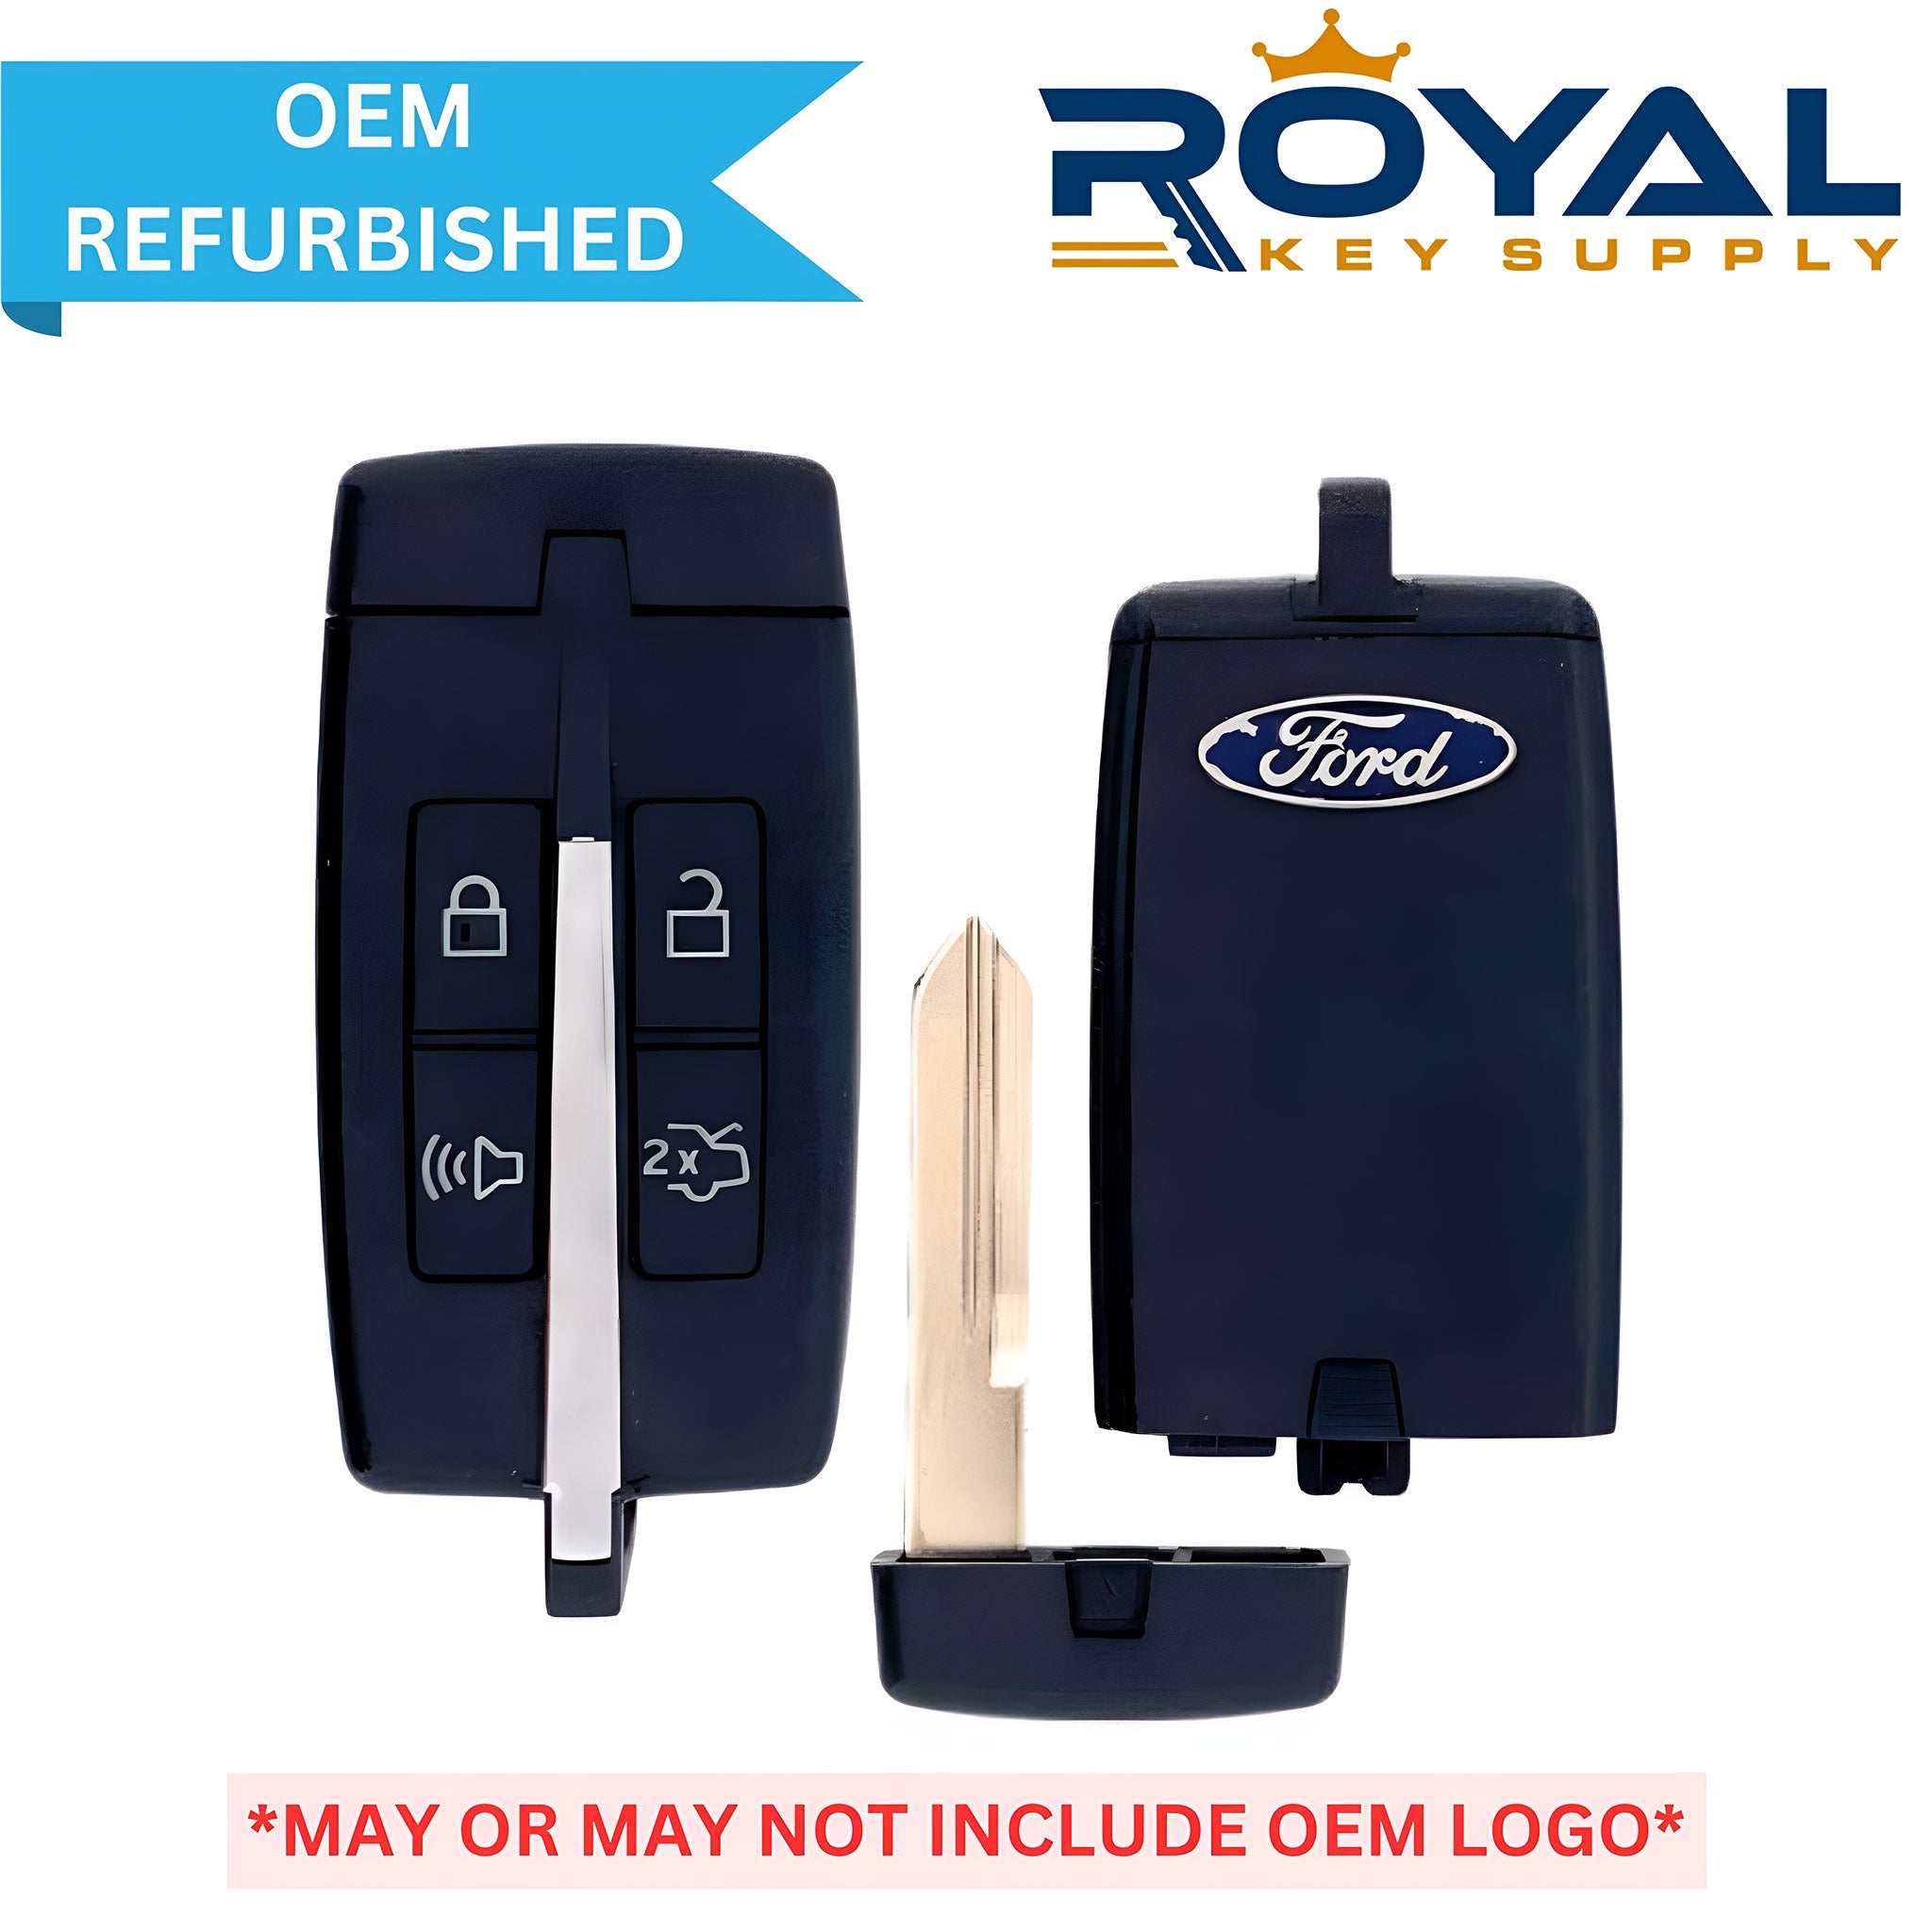 Ford Refurbished 2009-2012 Taurus Smart Key 4B Trunk FCCID: M3N5WY8406 PN# 5914118, 164-R7034 - Royal Key Supply